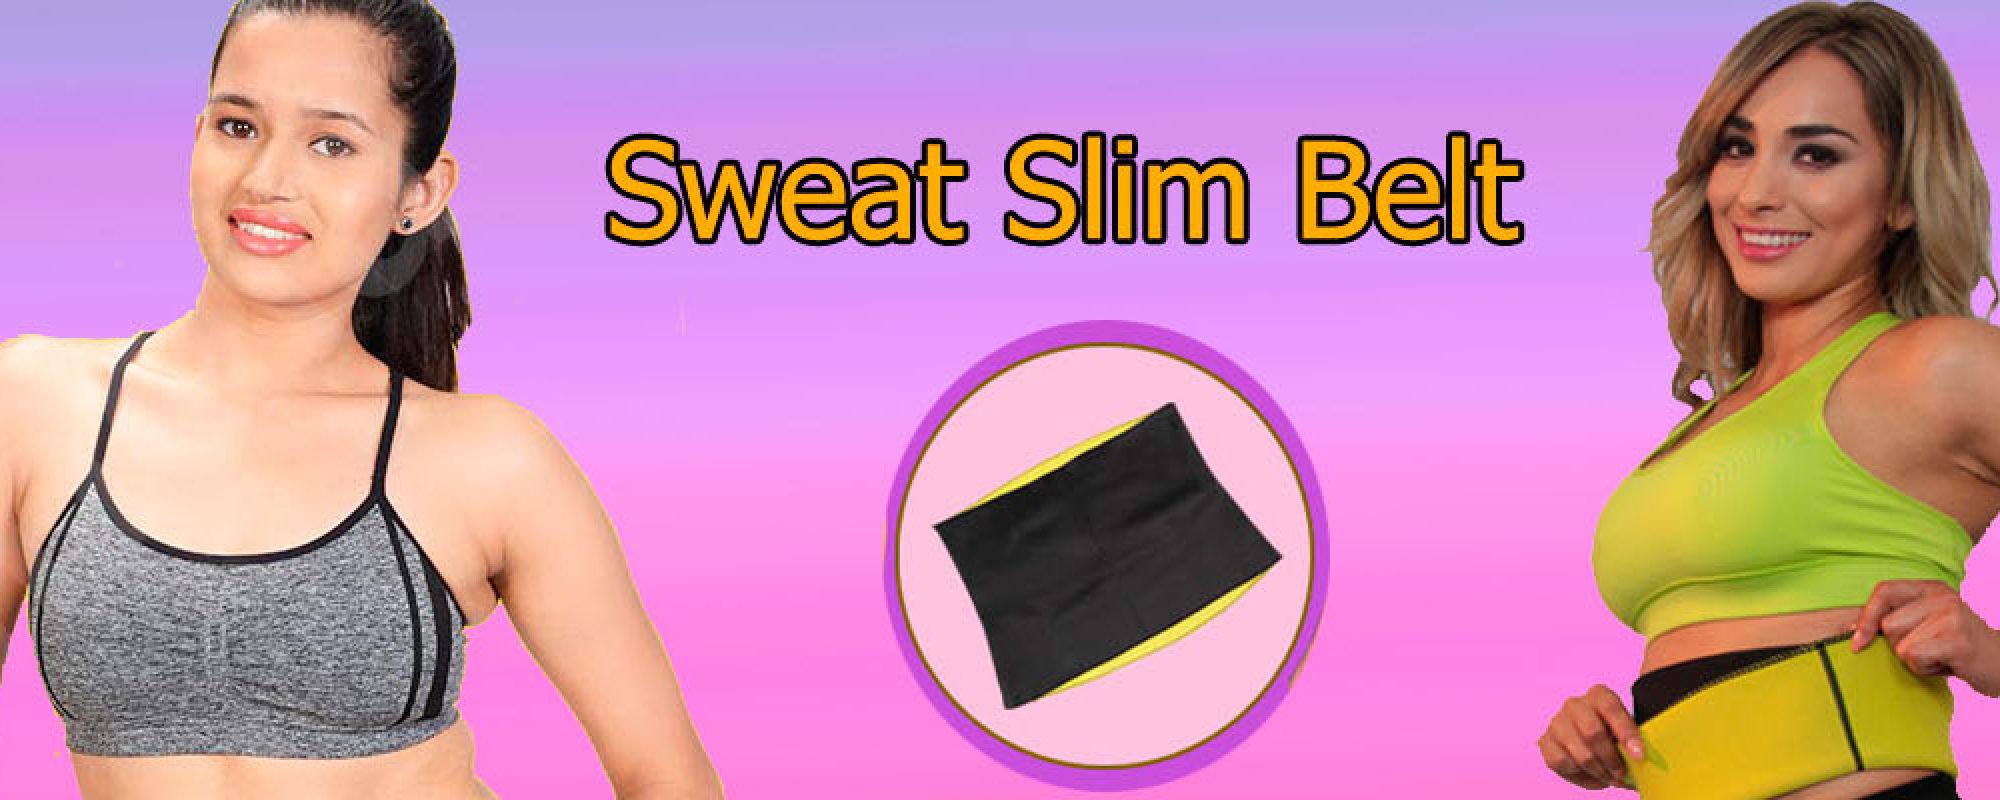 Original Sweat Slim Belt  Price Of Sweat Slim Bewlt – Sweat Slim Belt